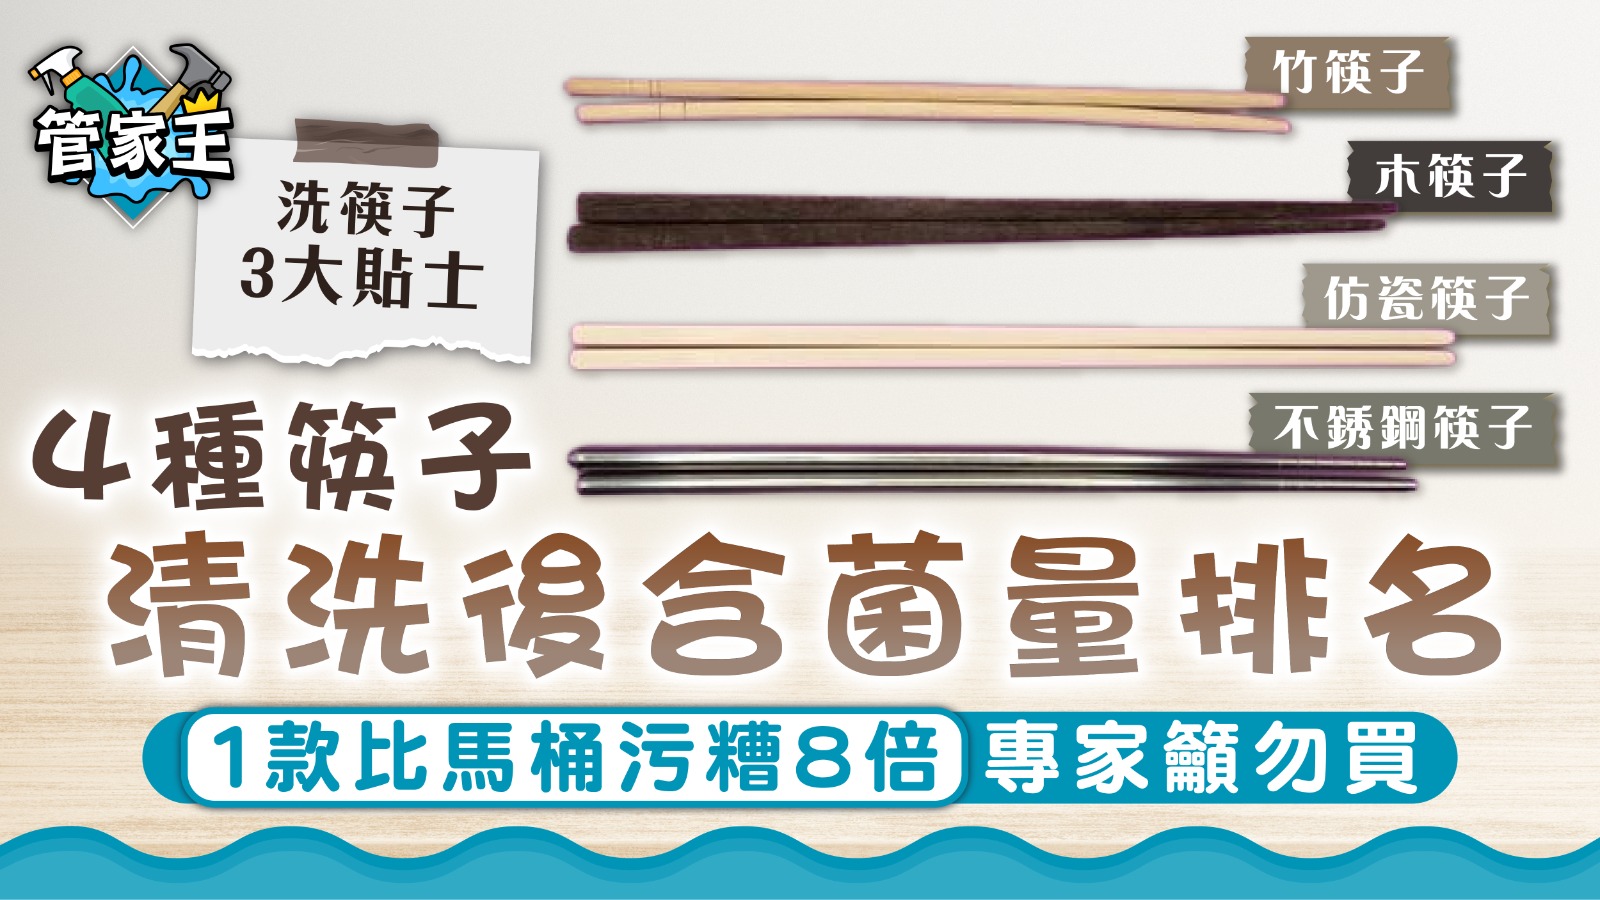 洗筷子｜4種筷子清洗後含菌量排名 1款比馬桶污糟8倍專家籲勿買